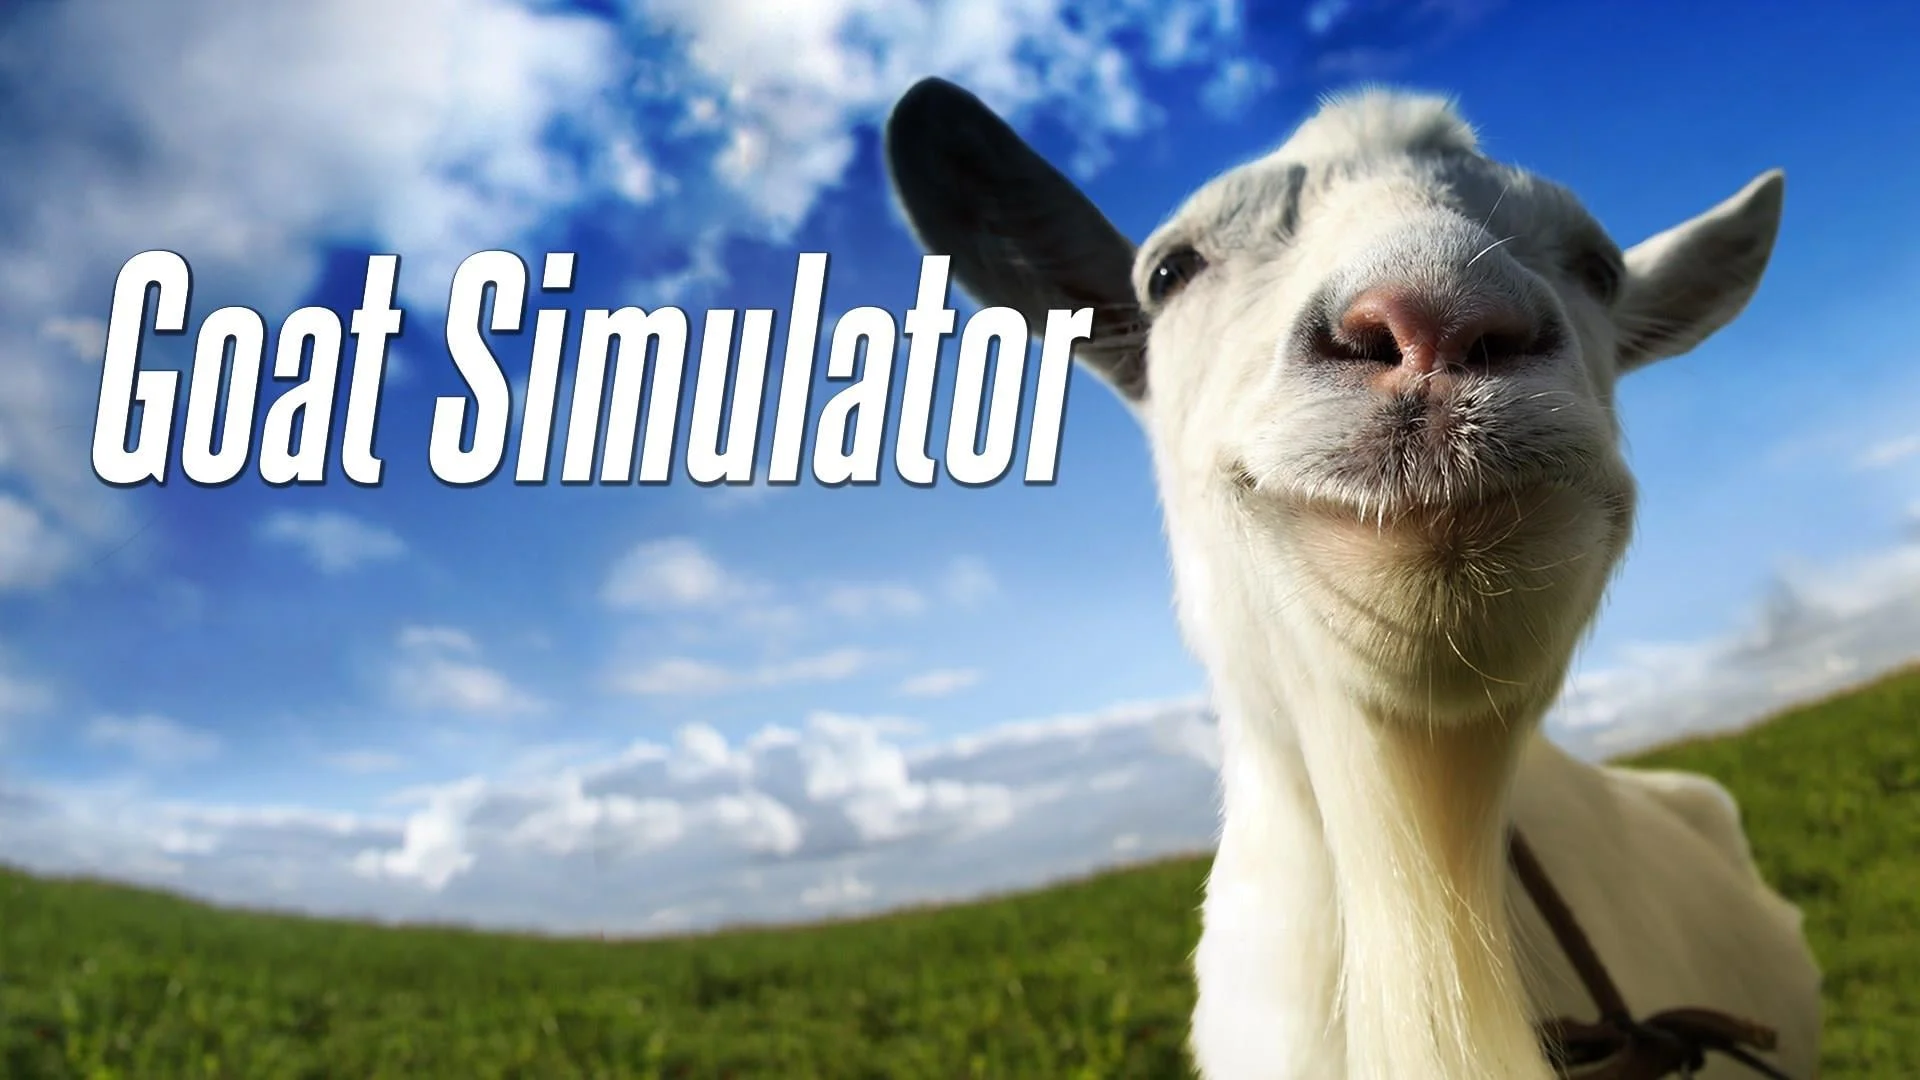 Goat Simulator game poster